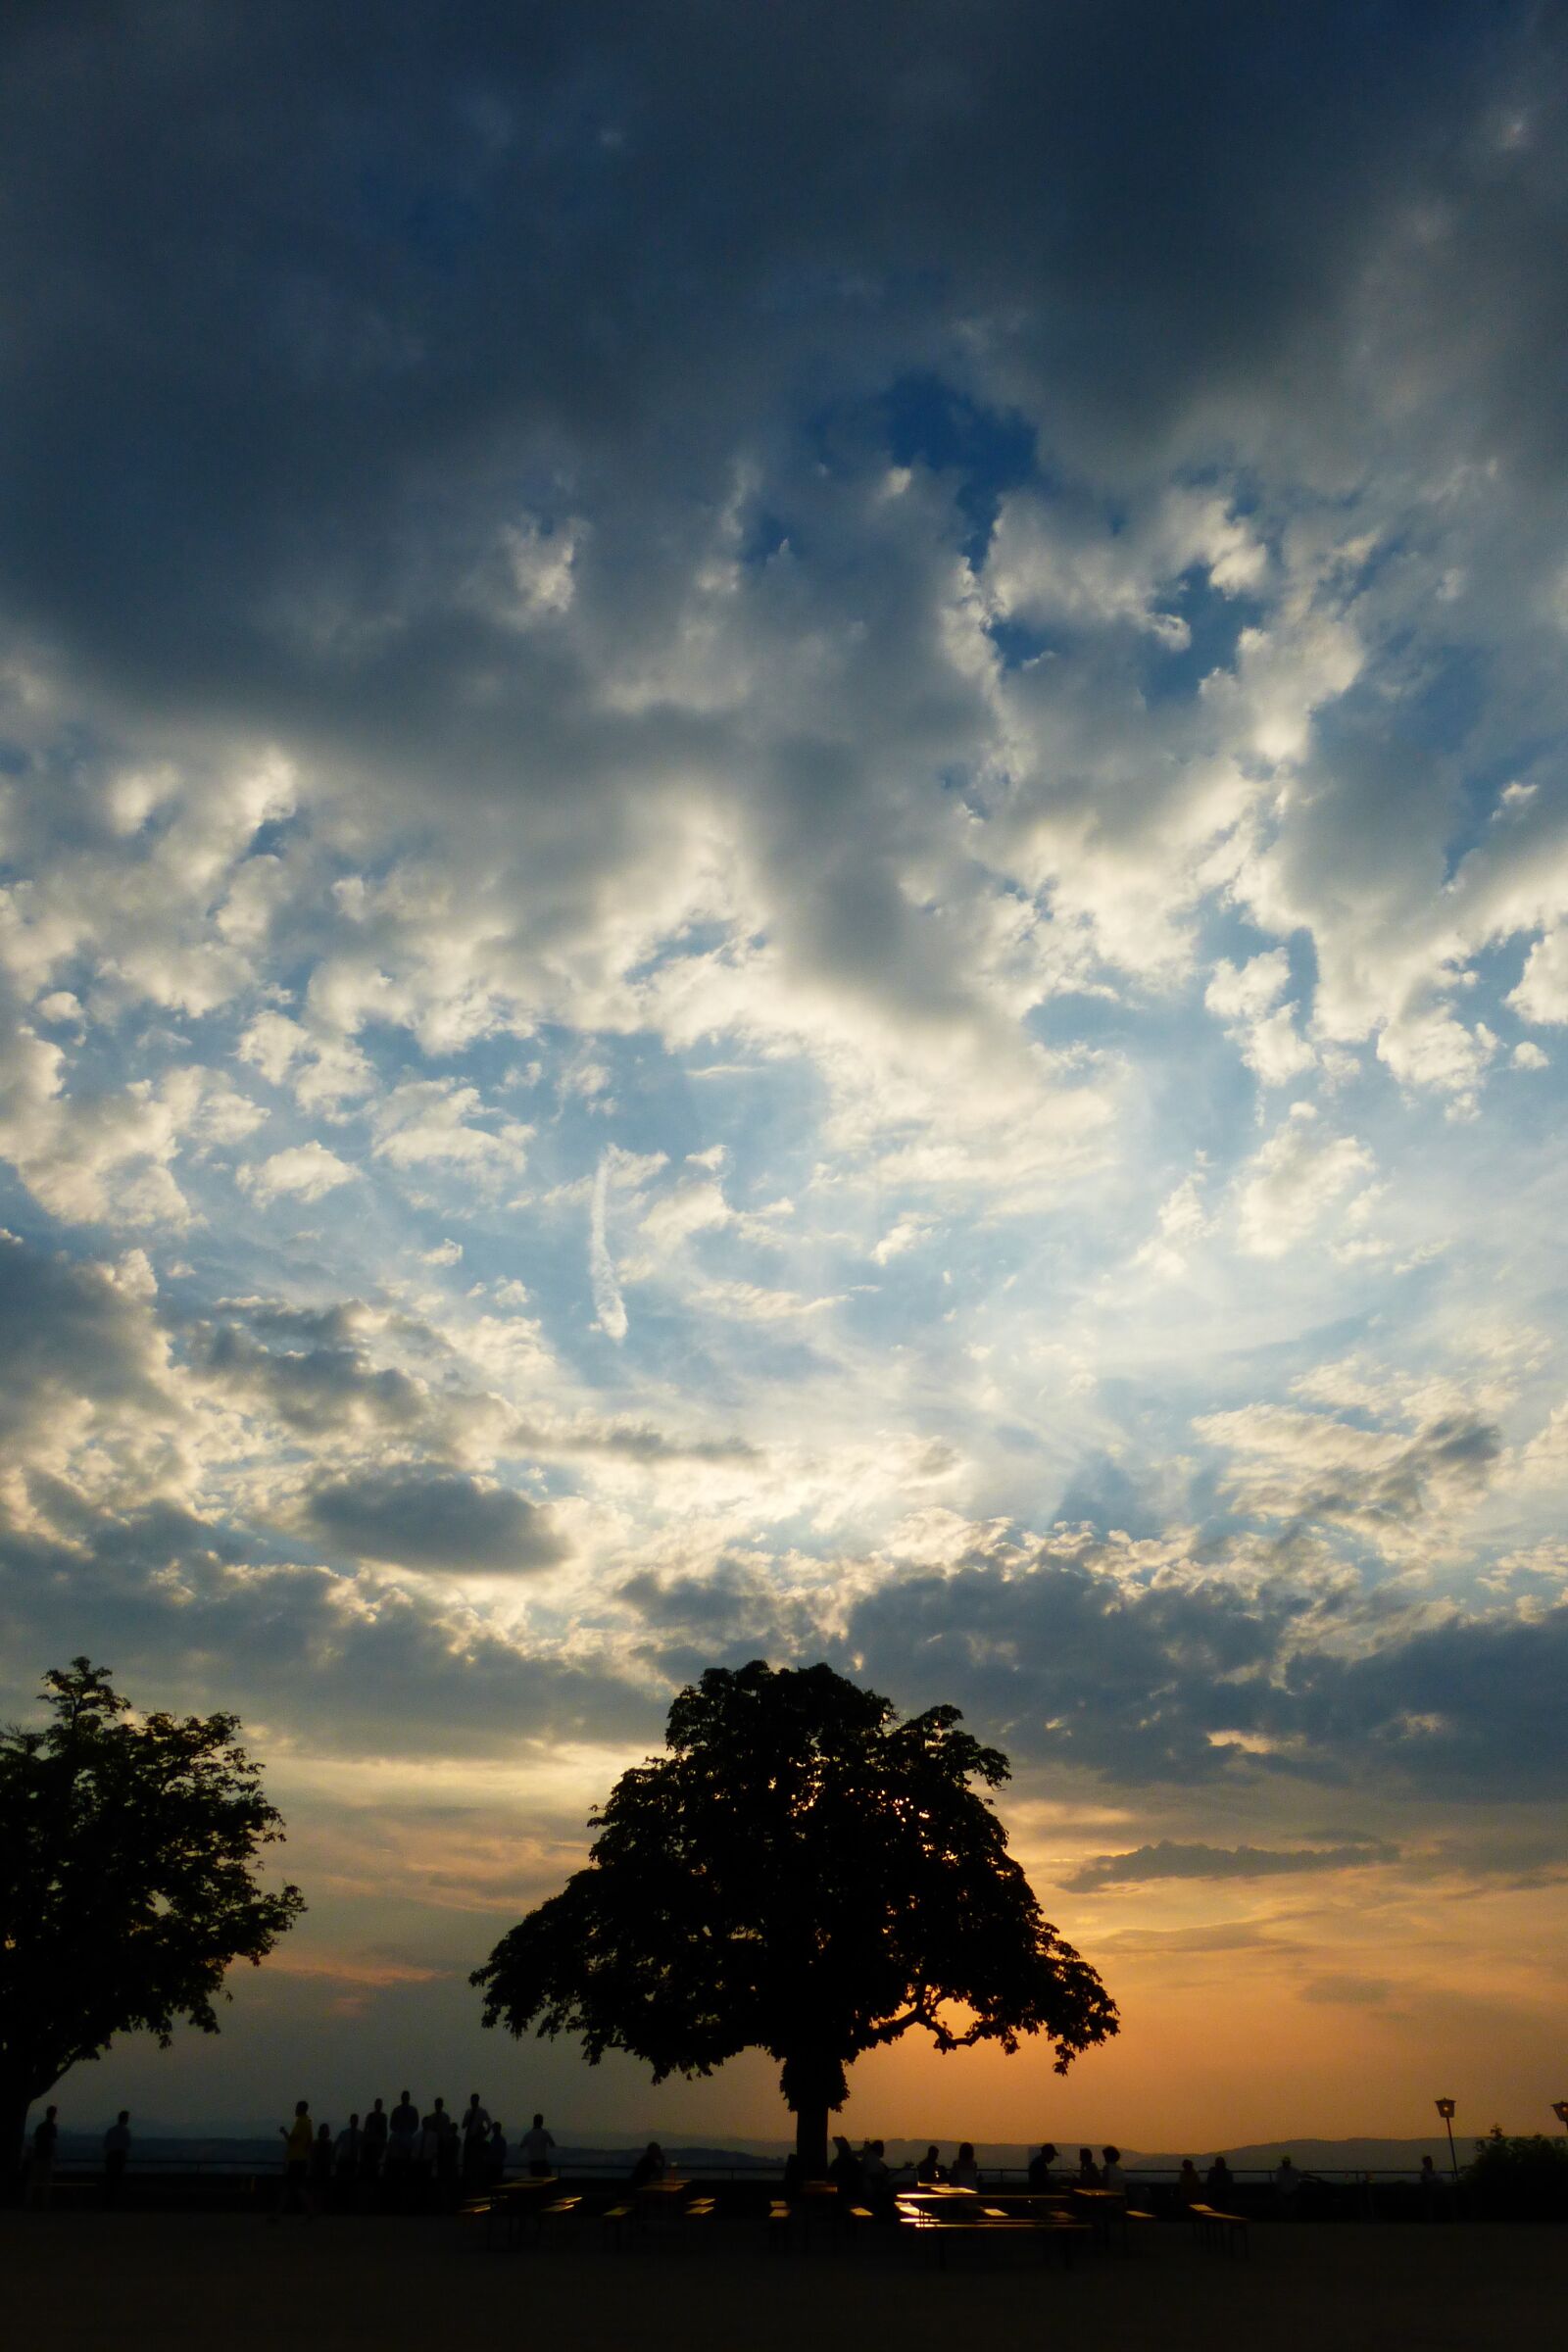 Panasonic DMC-TZ36 sample photo. Clouds, sunset, evening sky photography